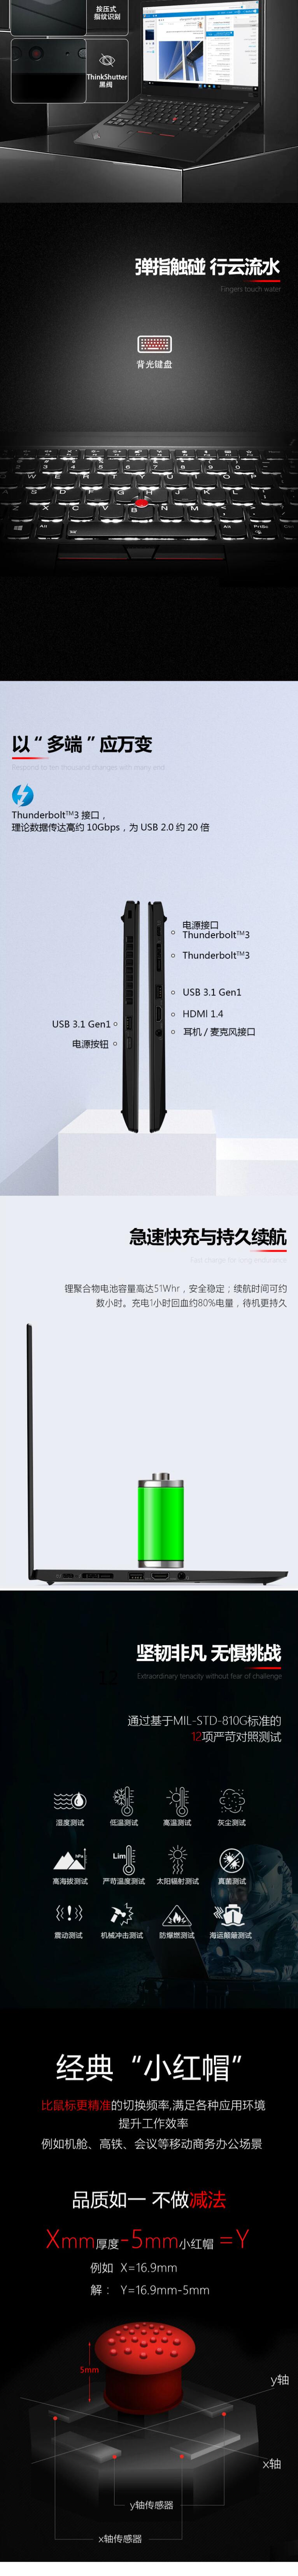 联想ThinkPad X1 Carbon 2019 14英寸笔记本电脑（i7-10710U/16G/512G SSD/核显/指纹识别）带半年4G流量(图9)